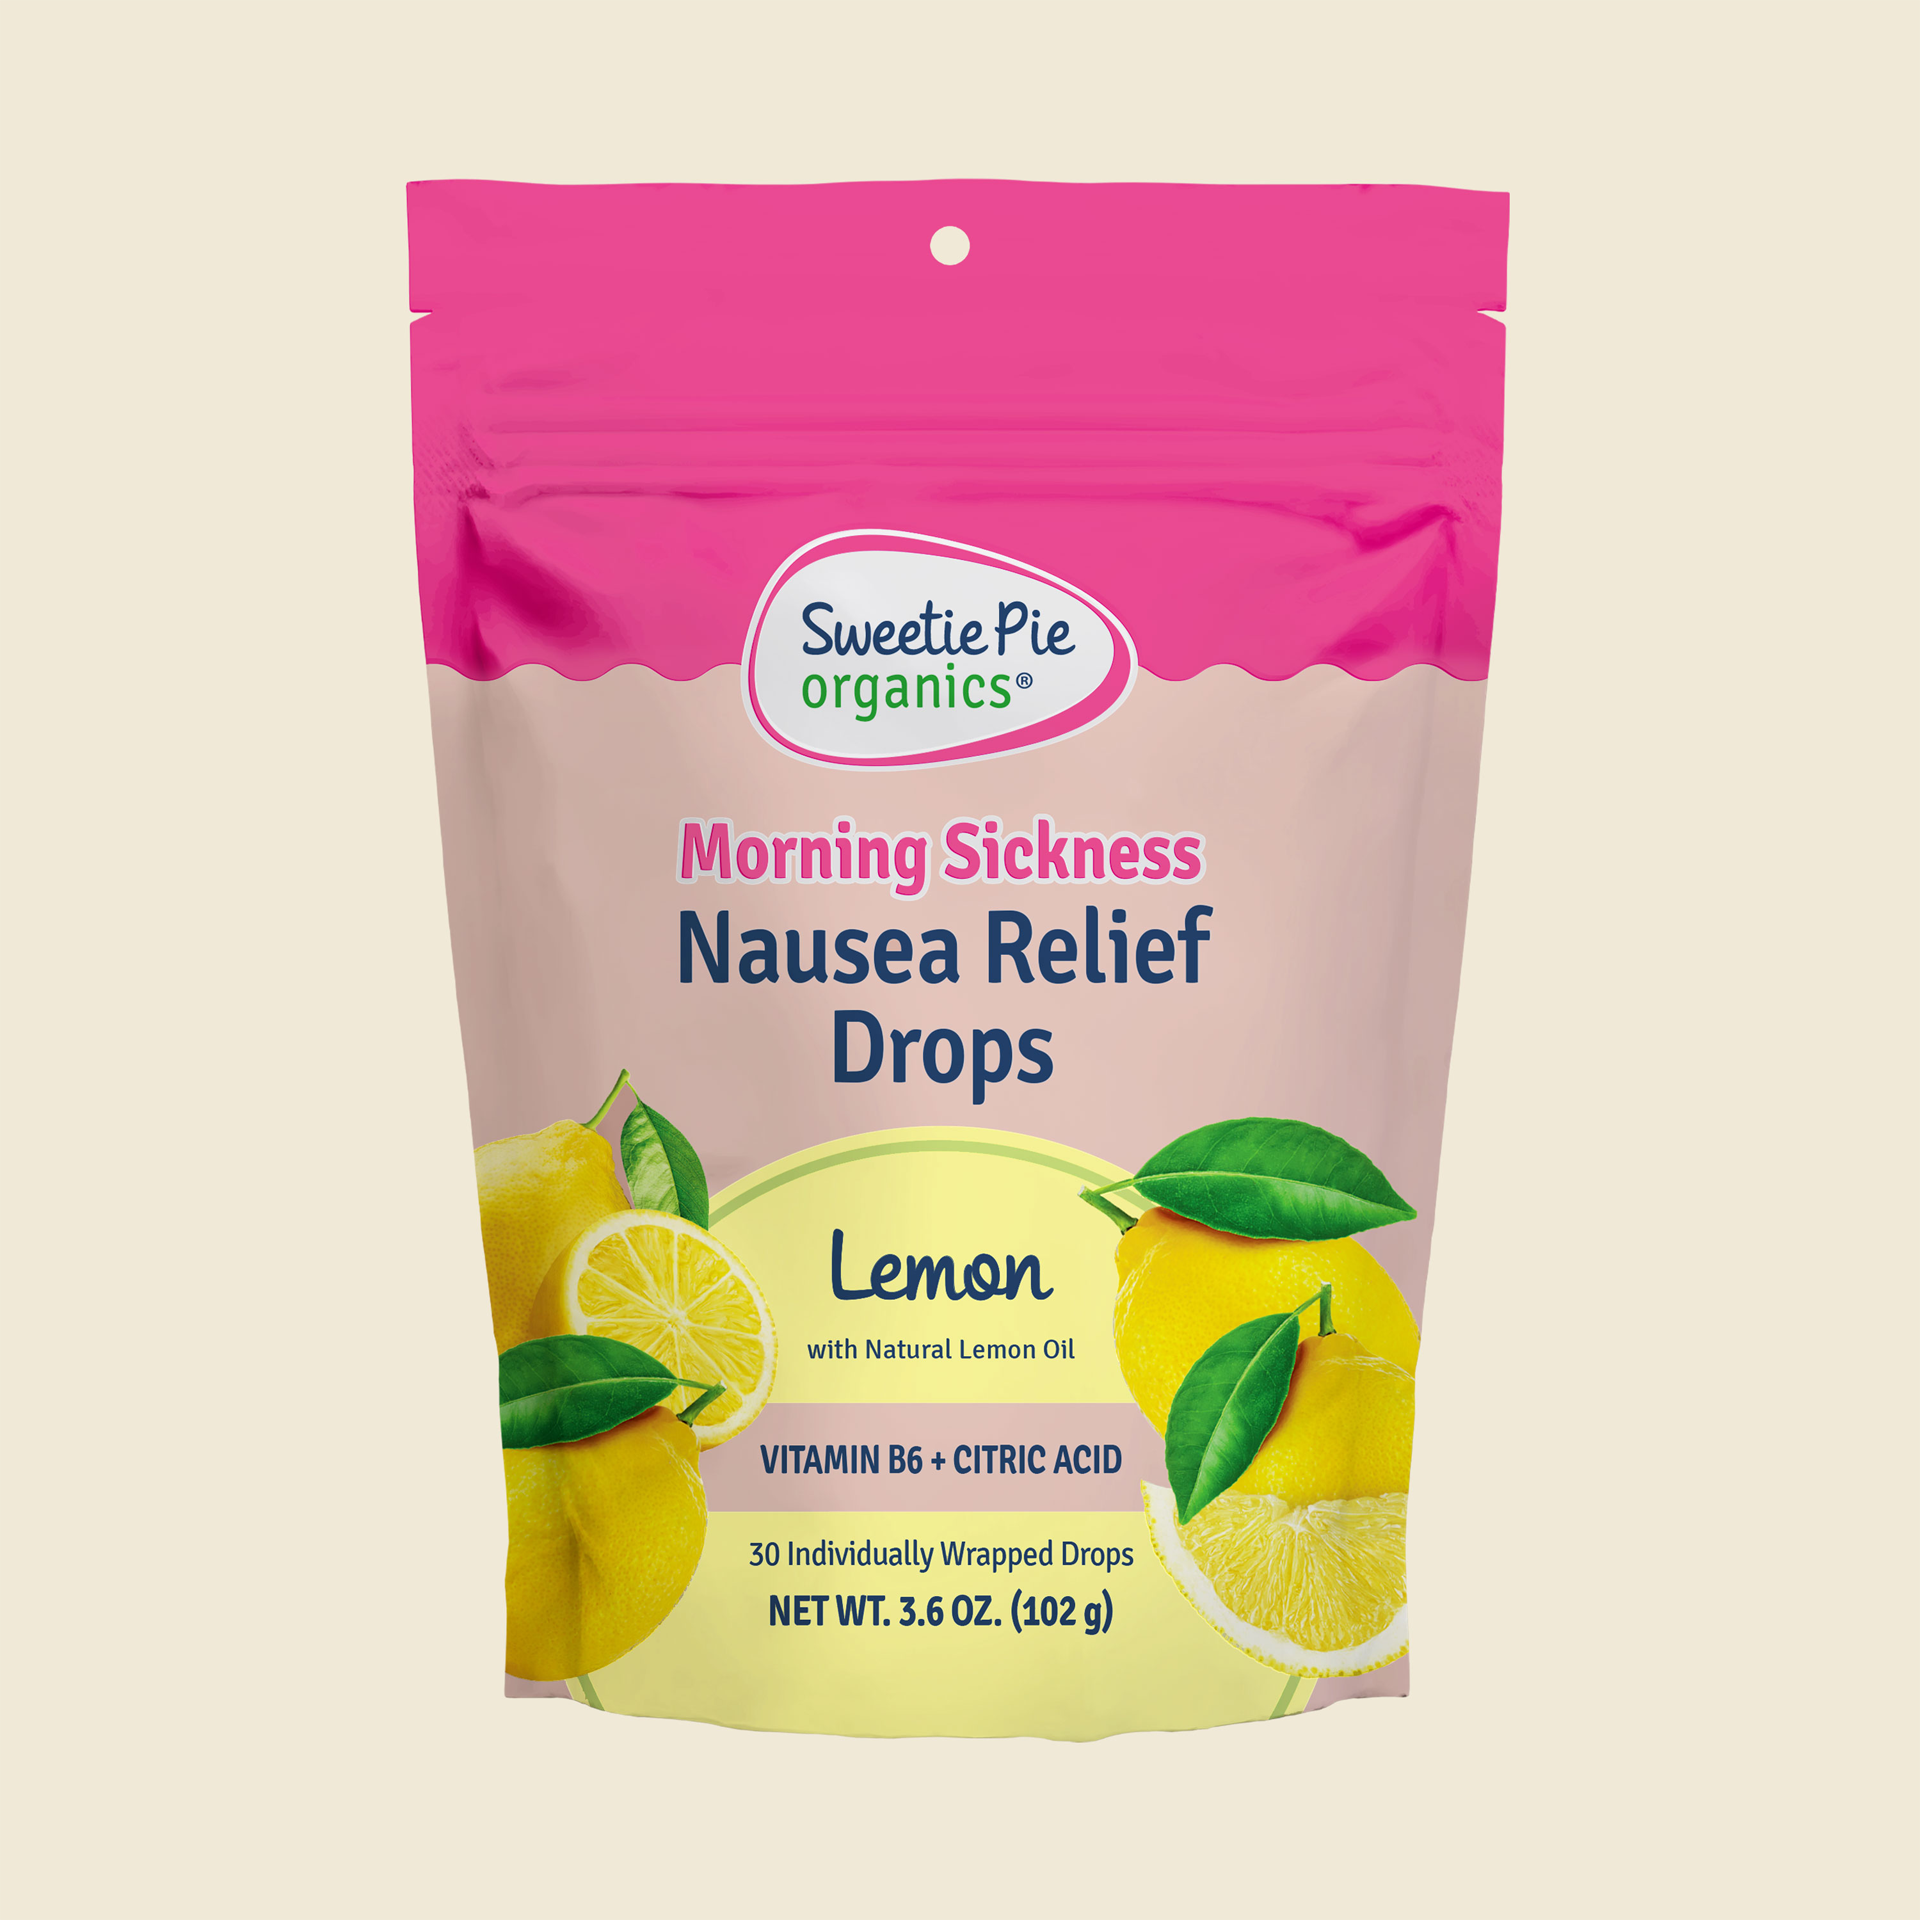 Bag of Sweetie Pie's lemon-flavored nausea relief drops